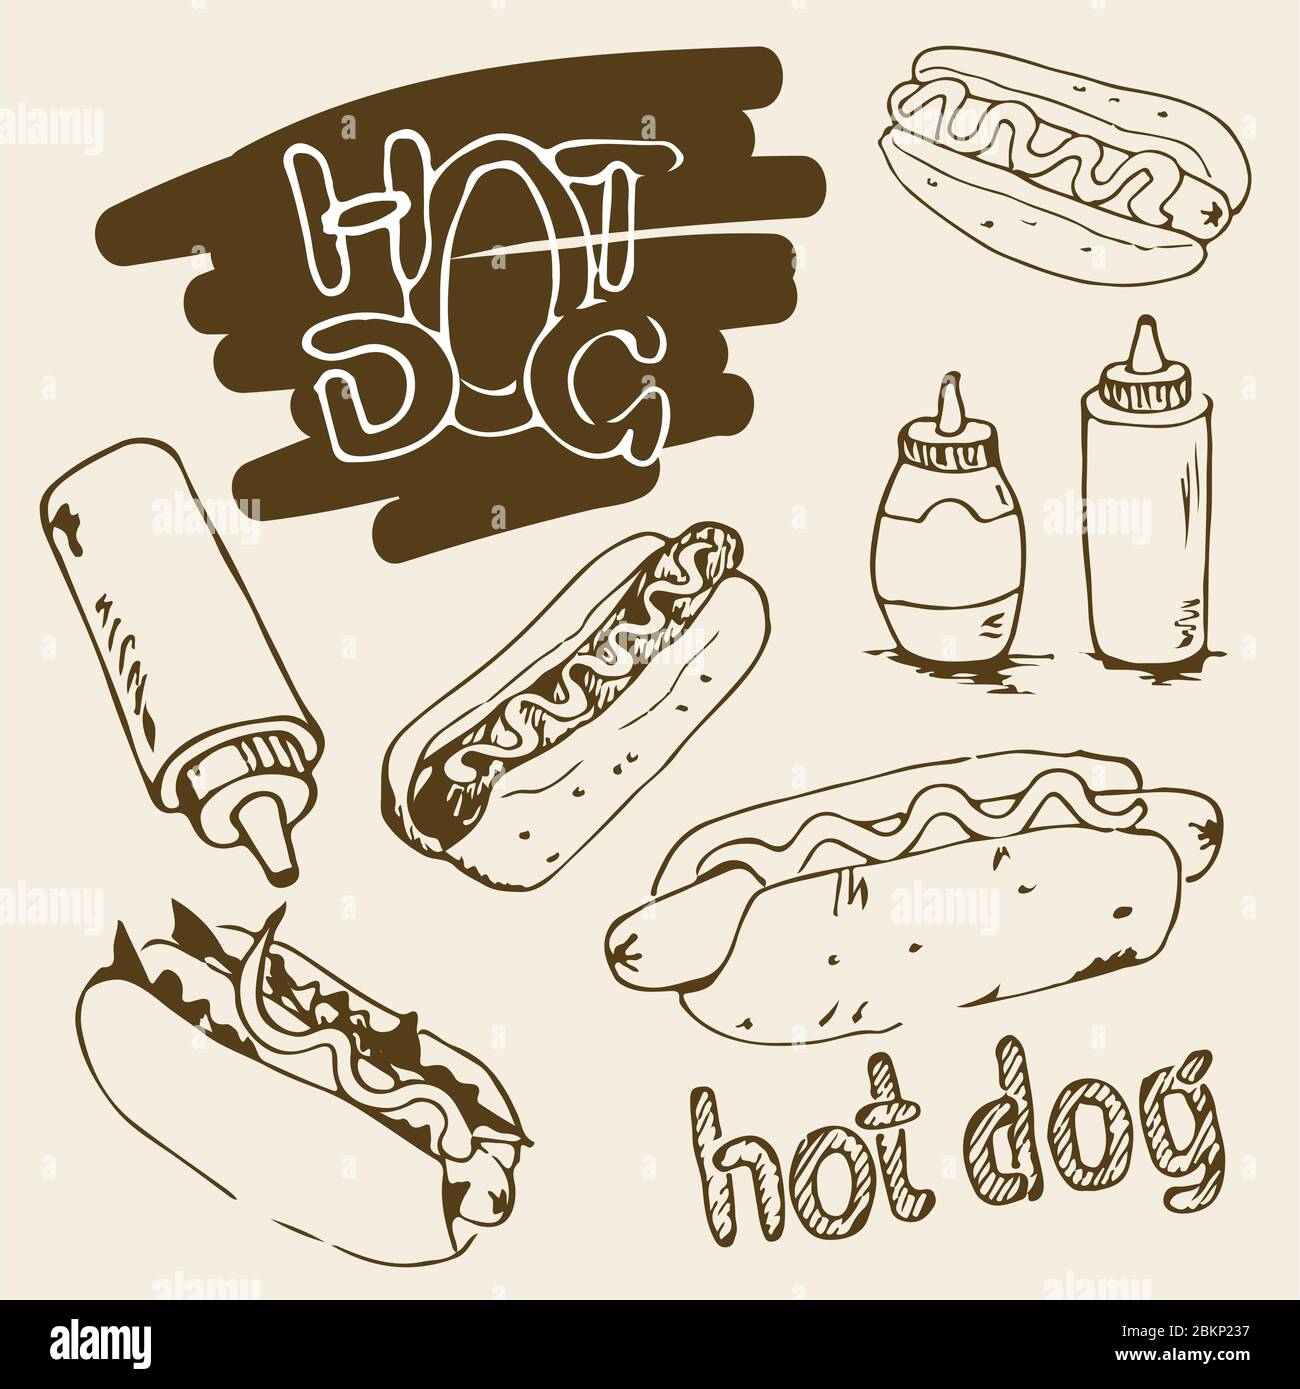 Handgezeichnete Abbildungen von Hot Dog. Fast-Food-Designelemente, Skizzen von Hotdogs mit Sauce und Mayonnaise. Plastikflaschen mit Sauce und Mayonnaise. Stock Vektor